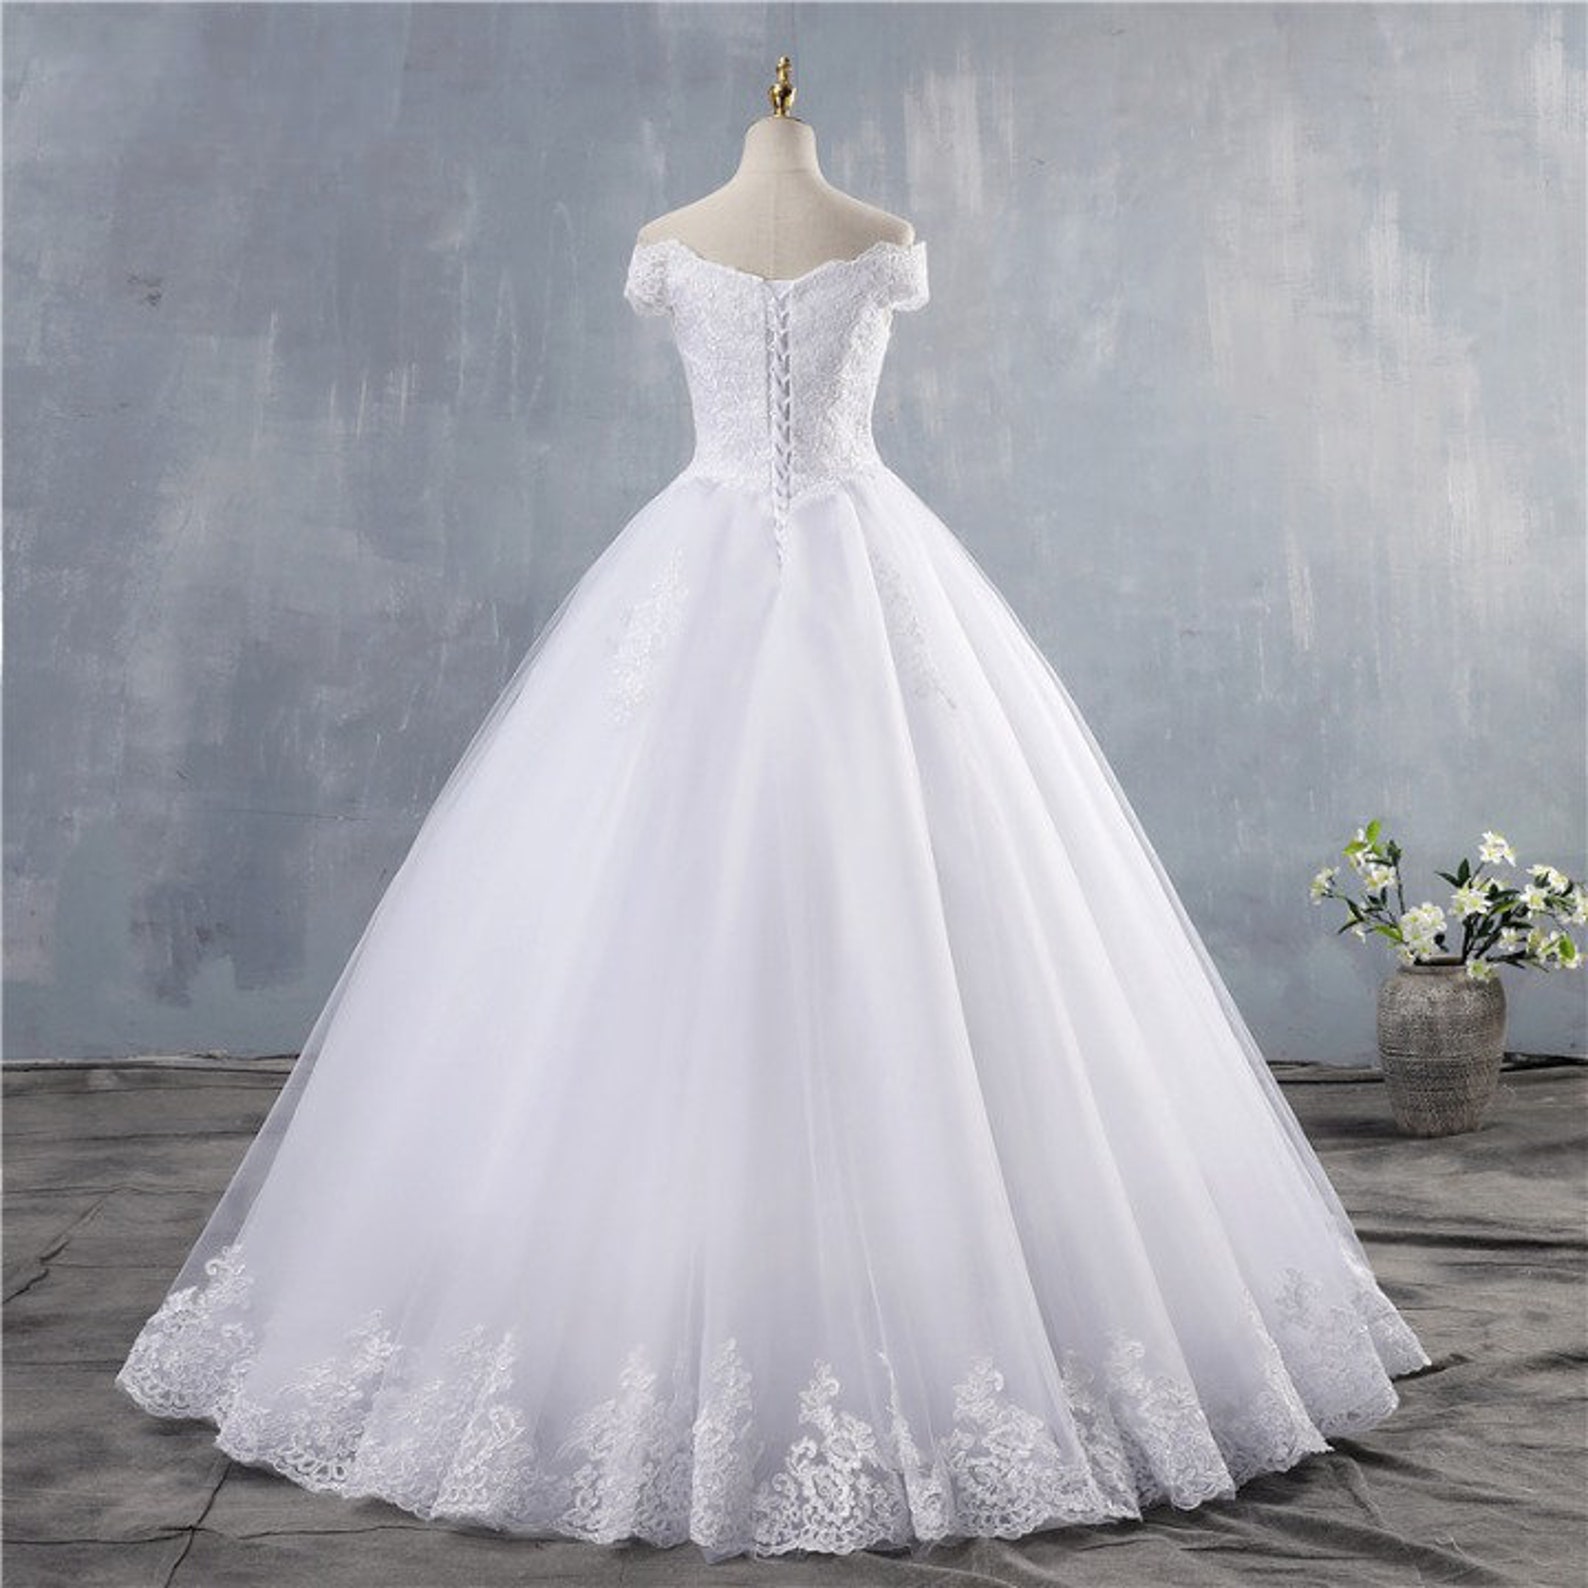 White Ivory Elegant off Shoulder Wedding Dresses for Brides - Etsy